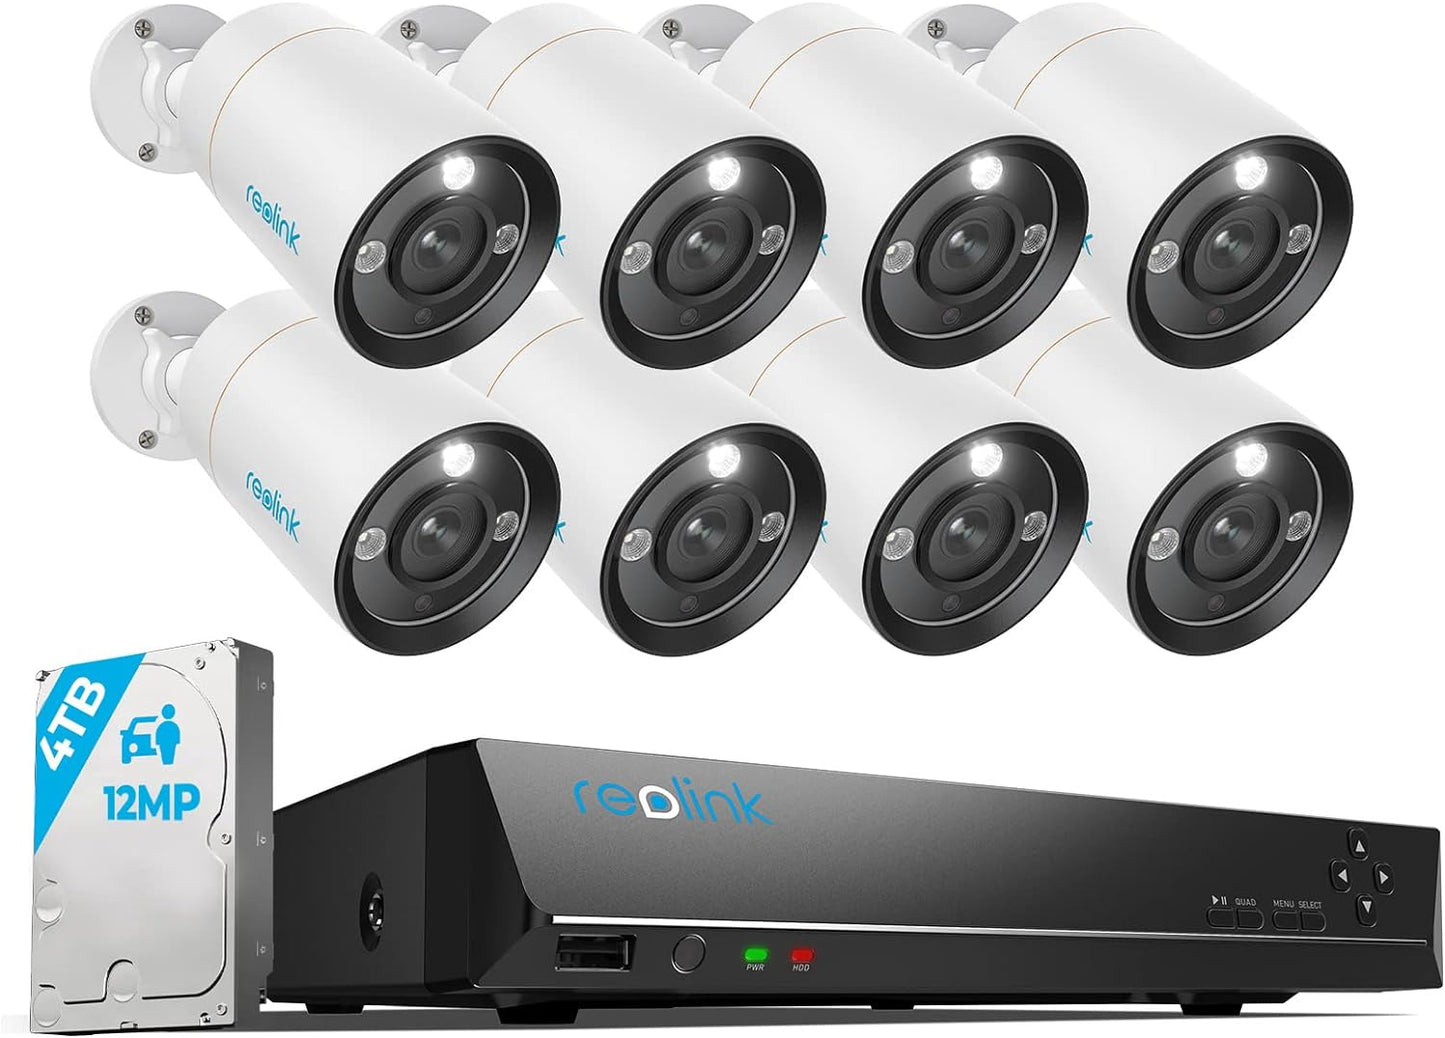 Komplet zunanjih nadzornih kamer Reolink 12MP, 8 x PoE IP kamera za nadzor na prostem, reflektorji, zaznavanje oseb/vozil, 2-smerni zvok, 24/7 barvni/IR nočni vid, 16CH 4TB HDD NVR, RLK16-1200B8-A